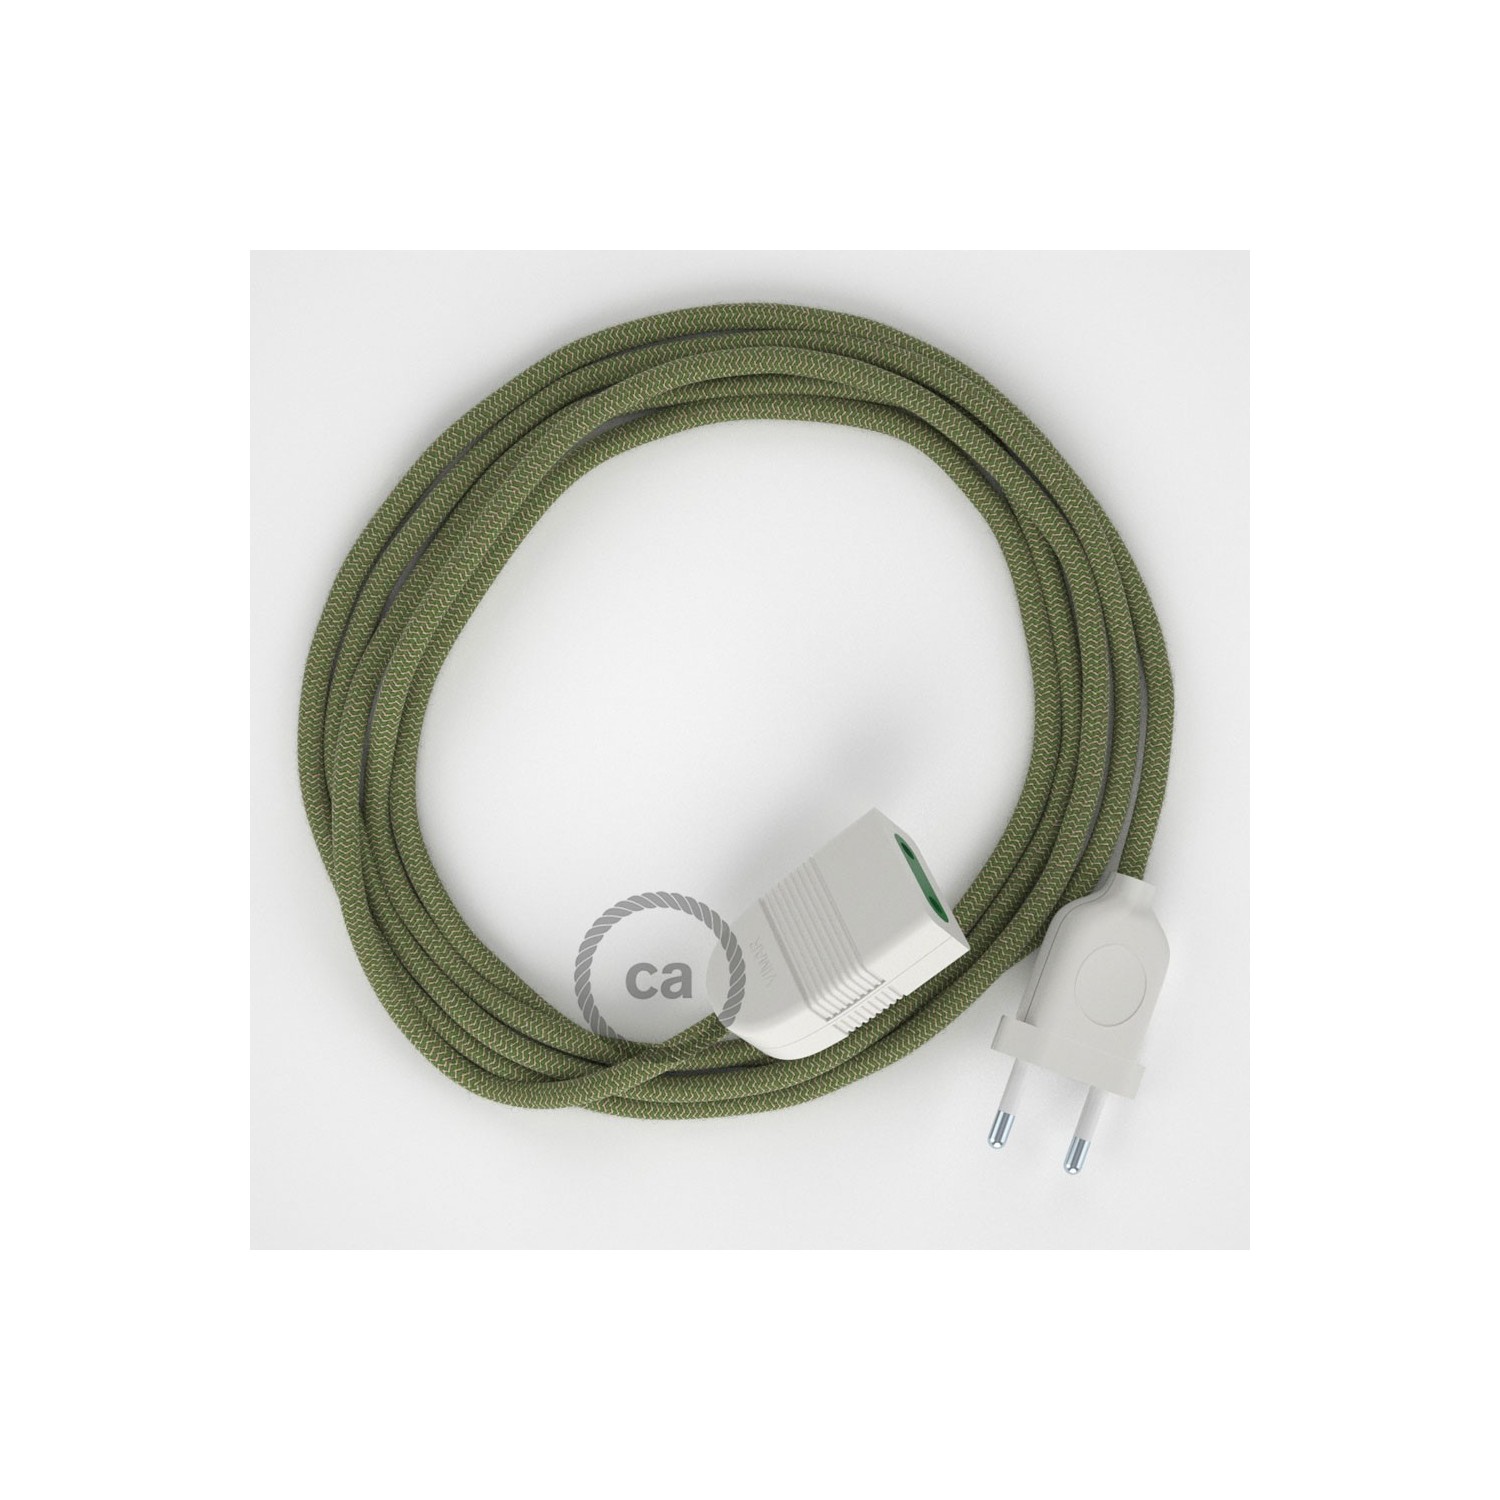 Pruhovaný tymiánový bavlněně - lněný RD72 2P 10A textilní prodlužovací elektrický kabel. Vyrobený v Itálii.